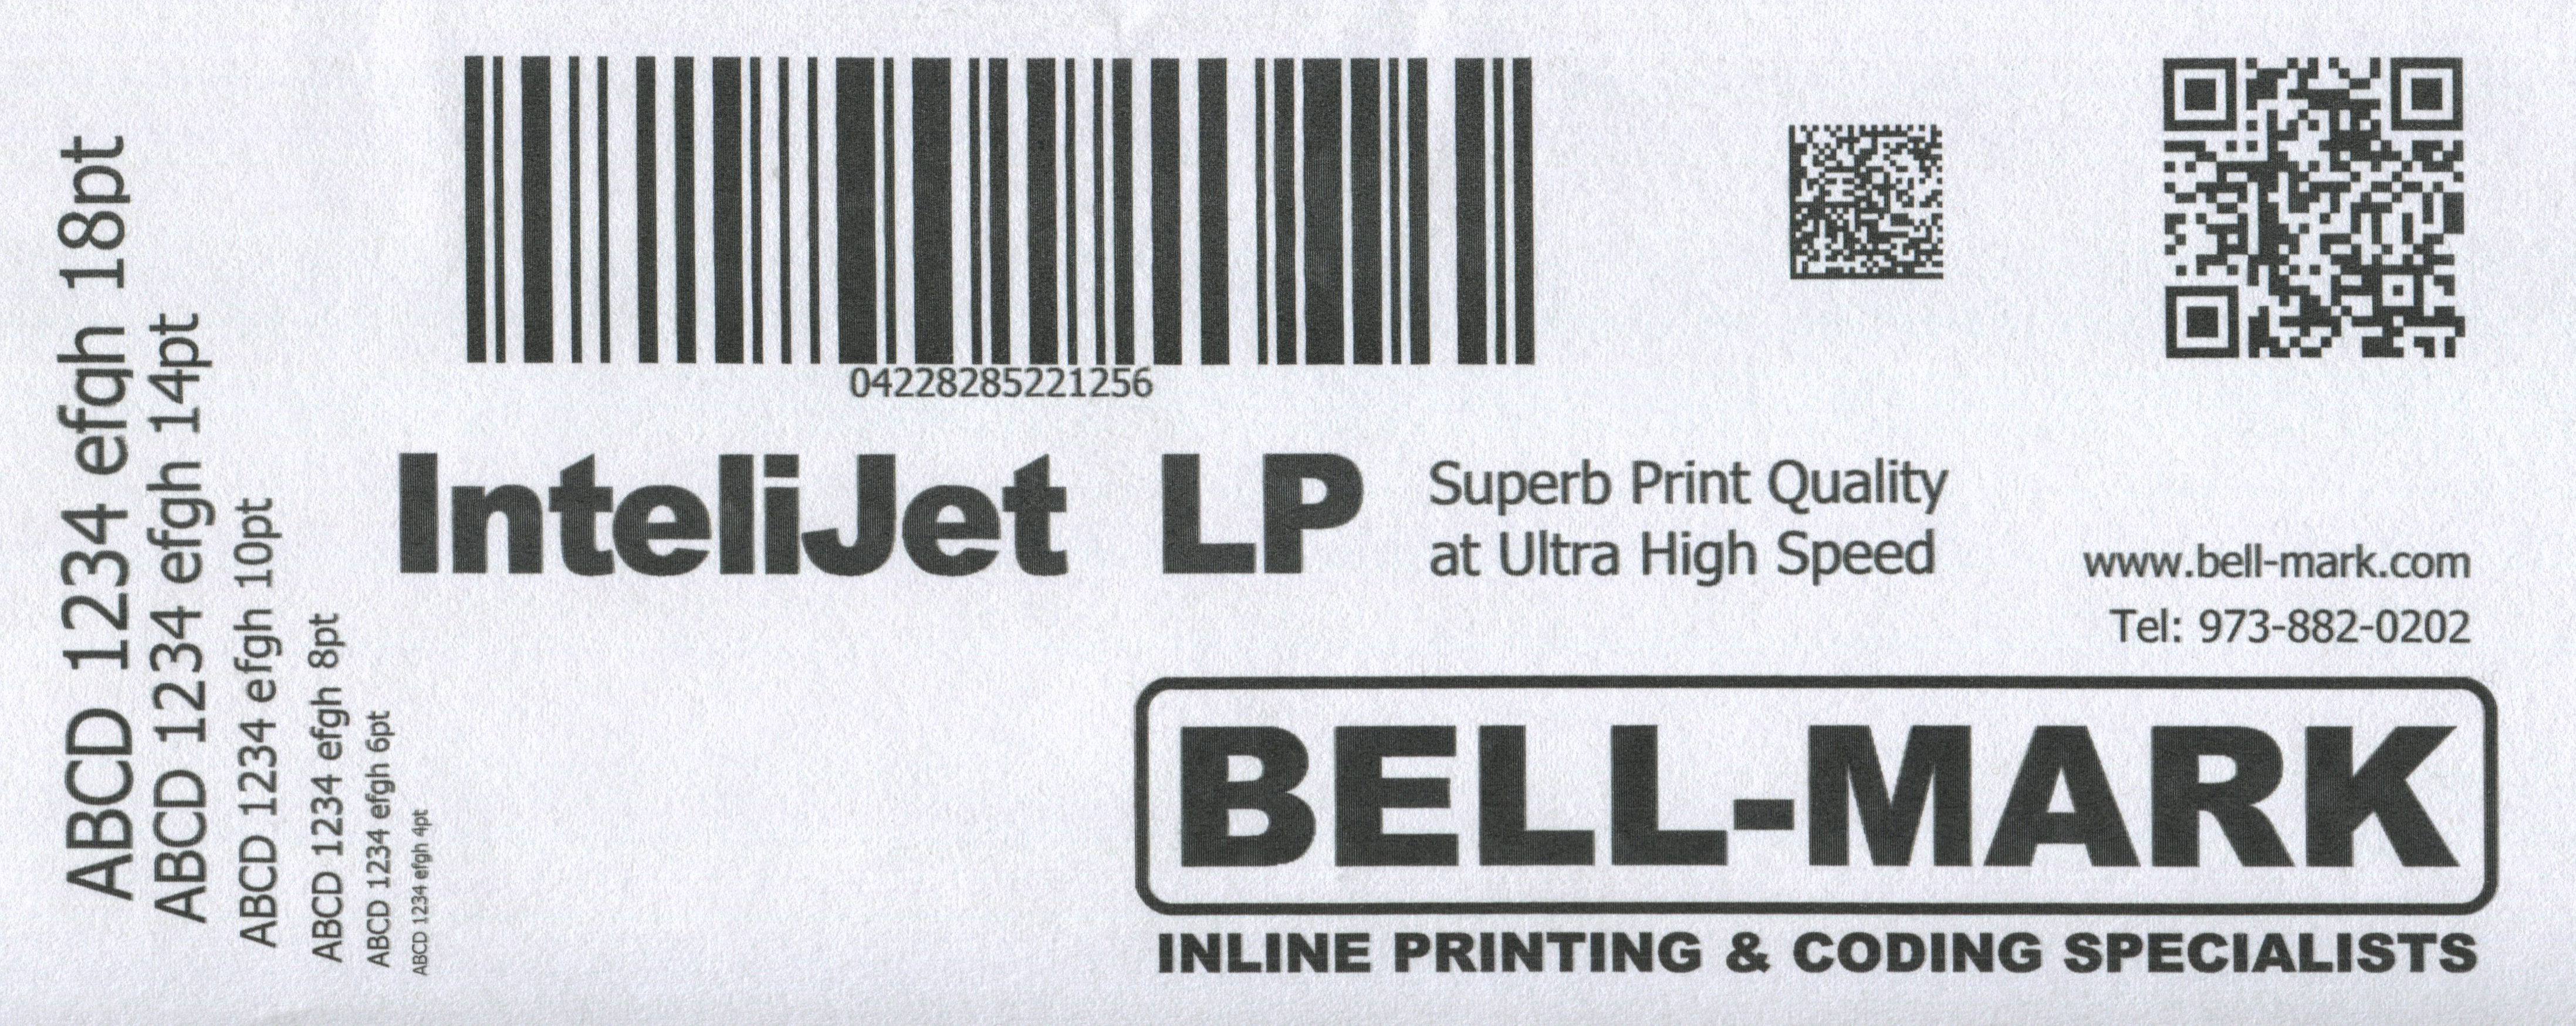 InteliJet LP printed samples